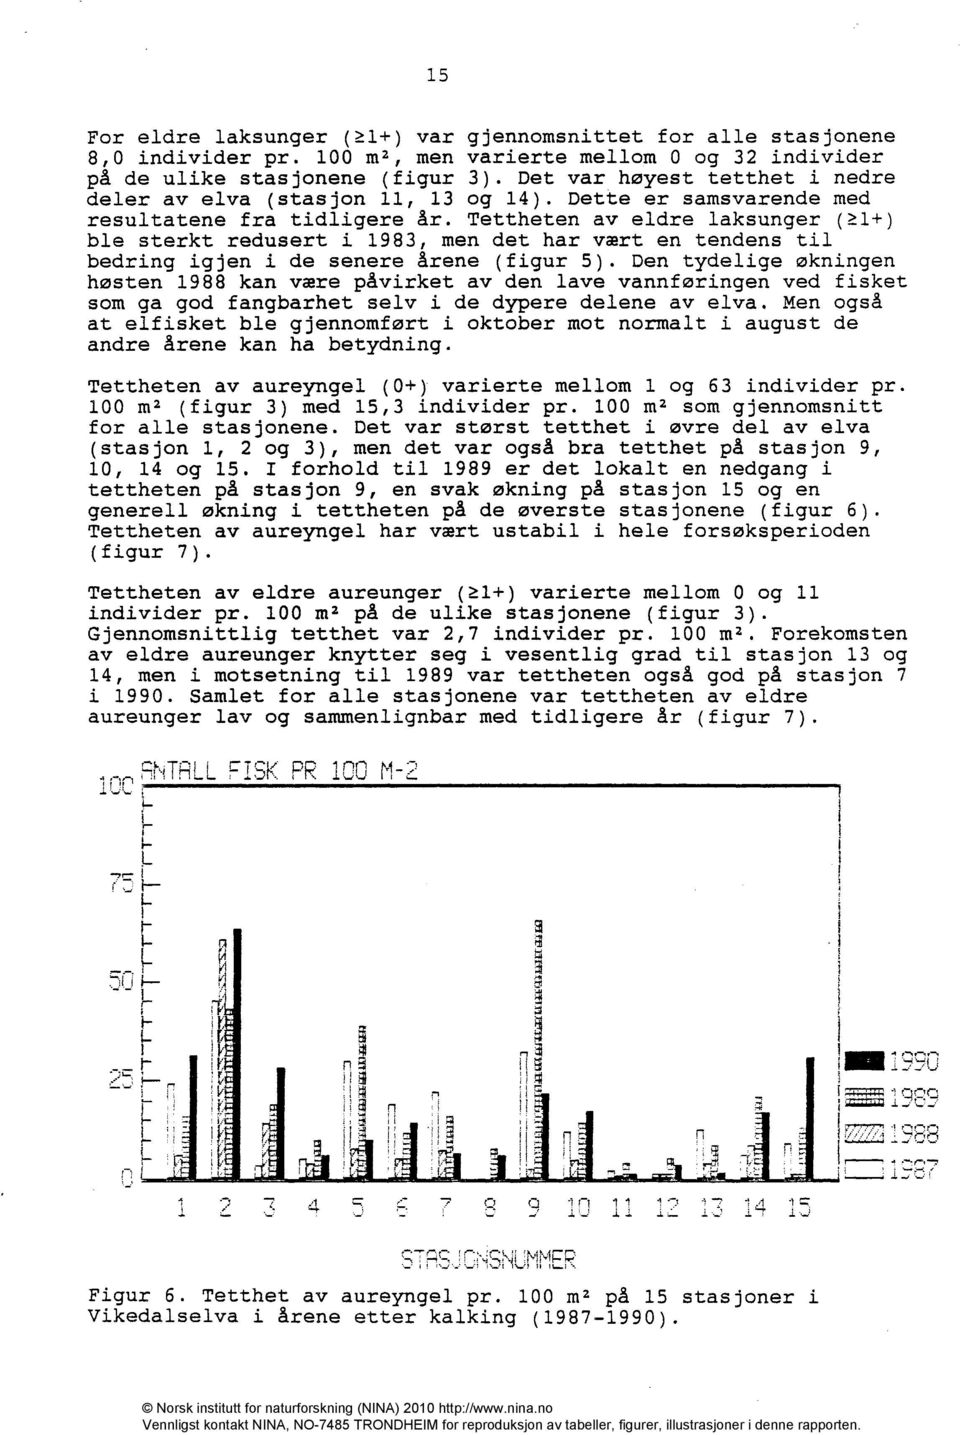 Tettheten av eldre laksunger (1+) ble sterkt redusert i 1983, men det har vært en tendens til bedring igjen i de senere årene (figur 5).